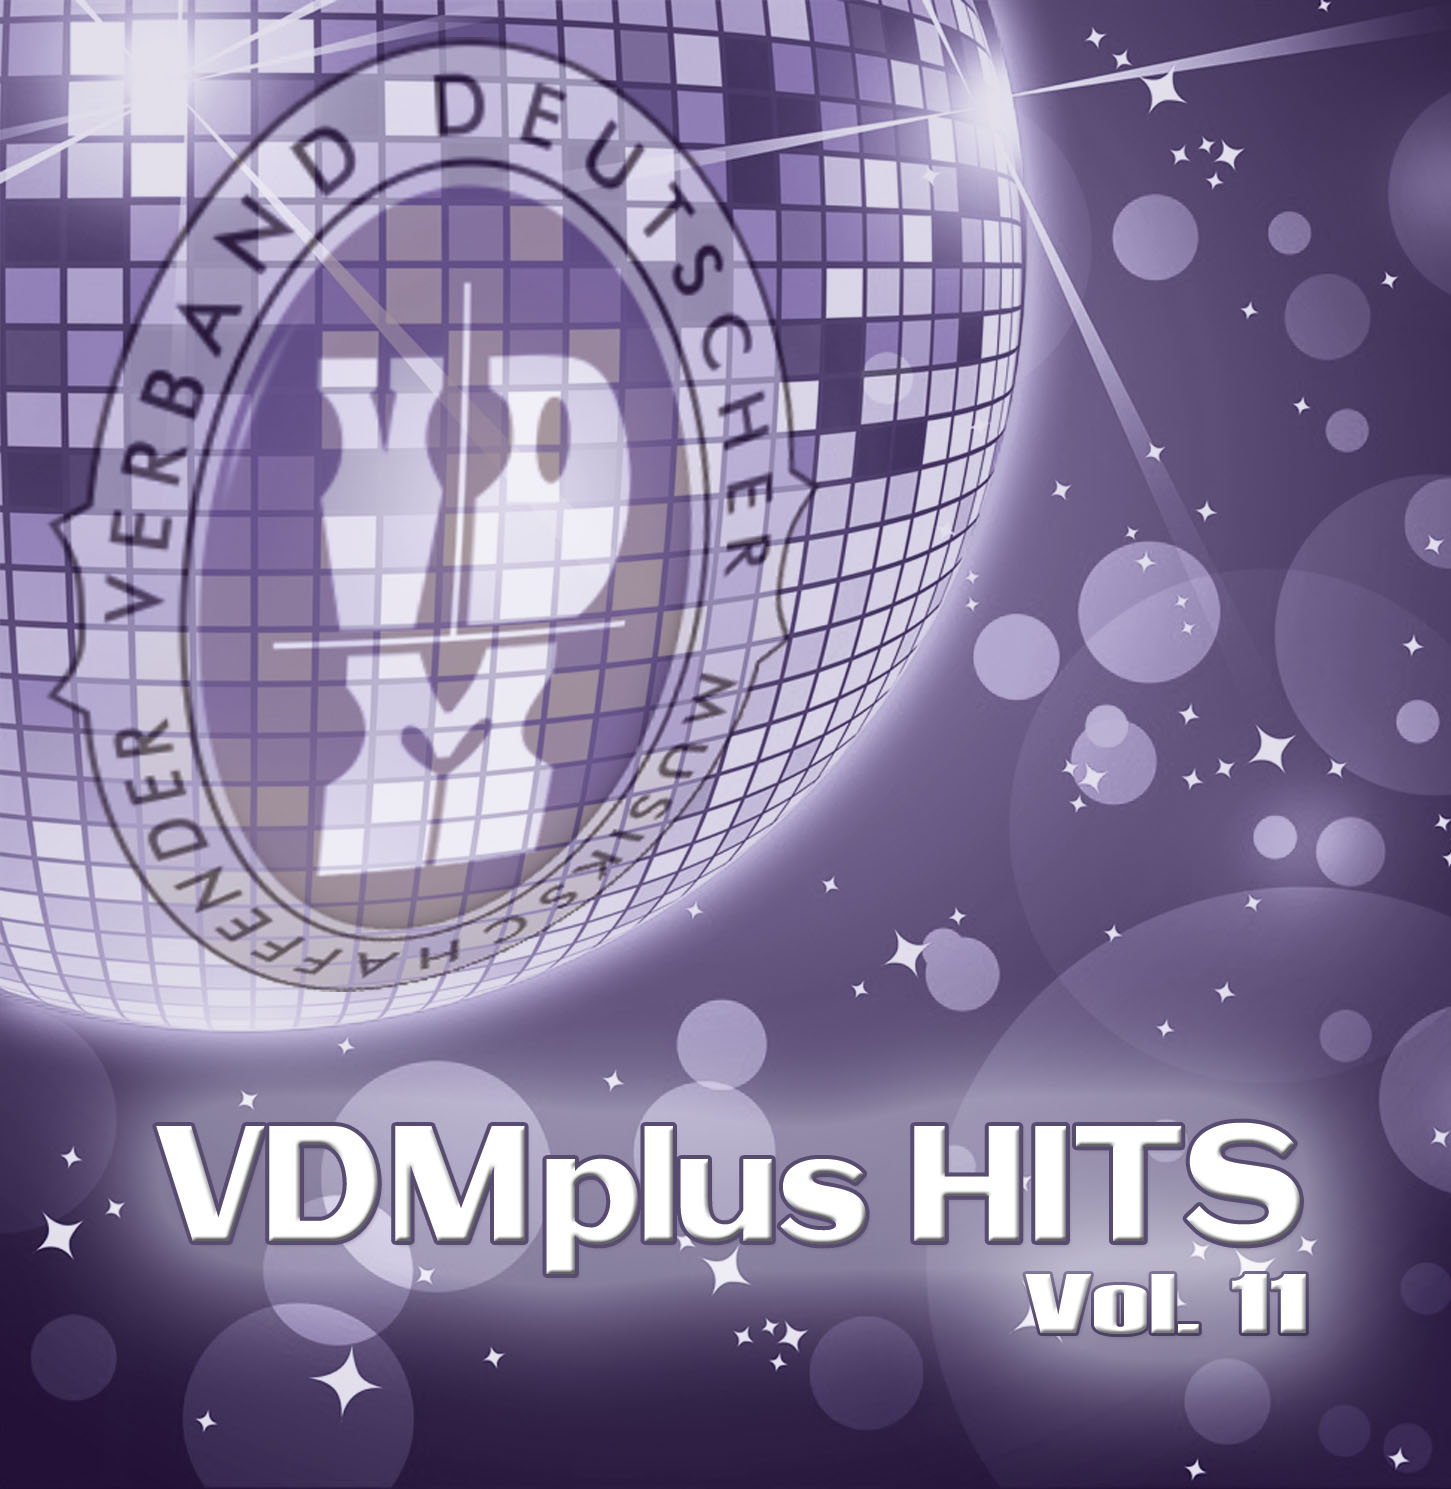 VDMplus HITS Vol.11 CD-Cover von KiTon Musikproduktion in Zusammenarbeit mit dem VDMplus